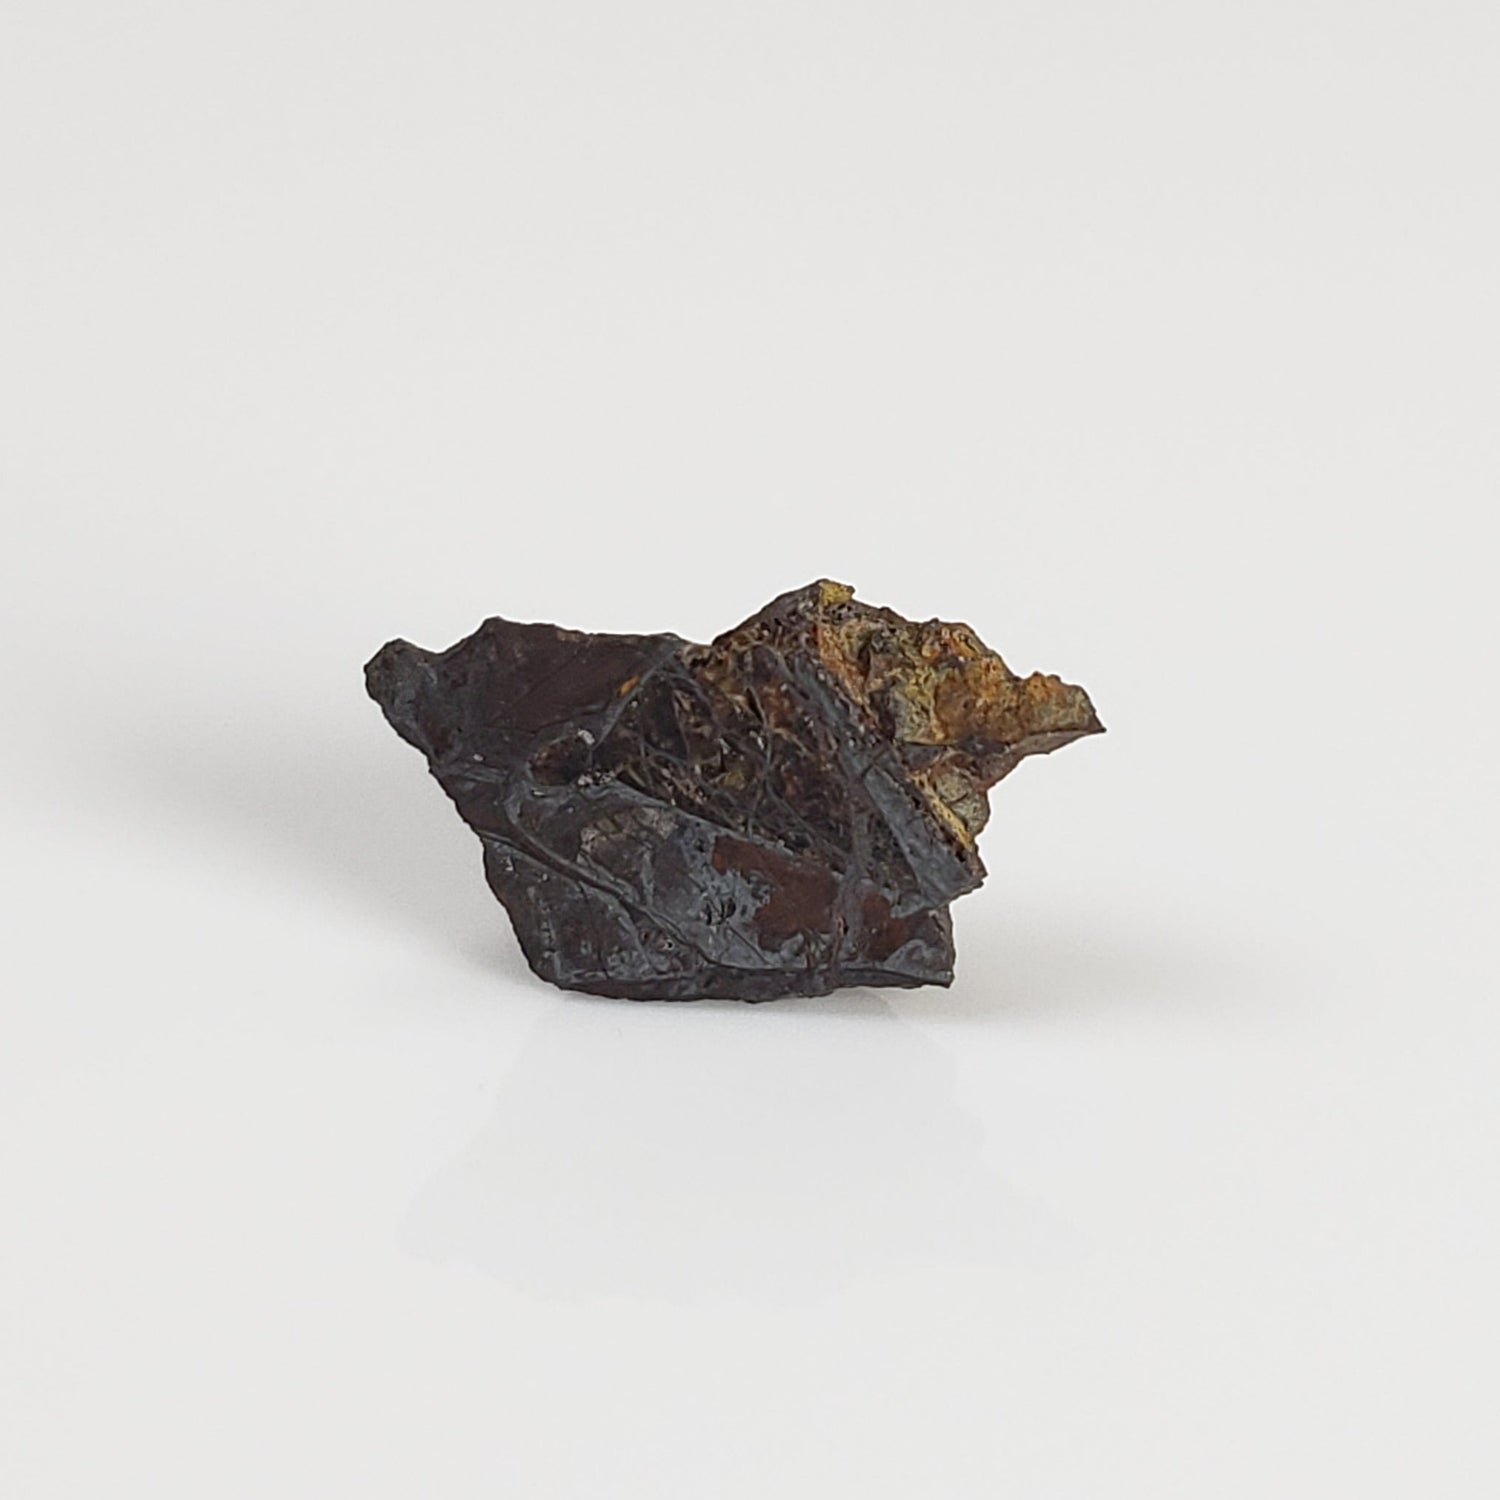 Huckitta Meteorite | 200 milligrams | Fragment | Pallasite Stony Iron | Rare | Australia